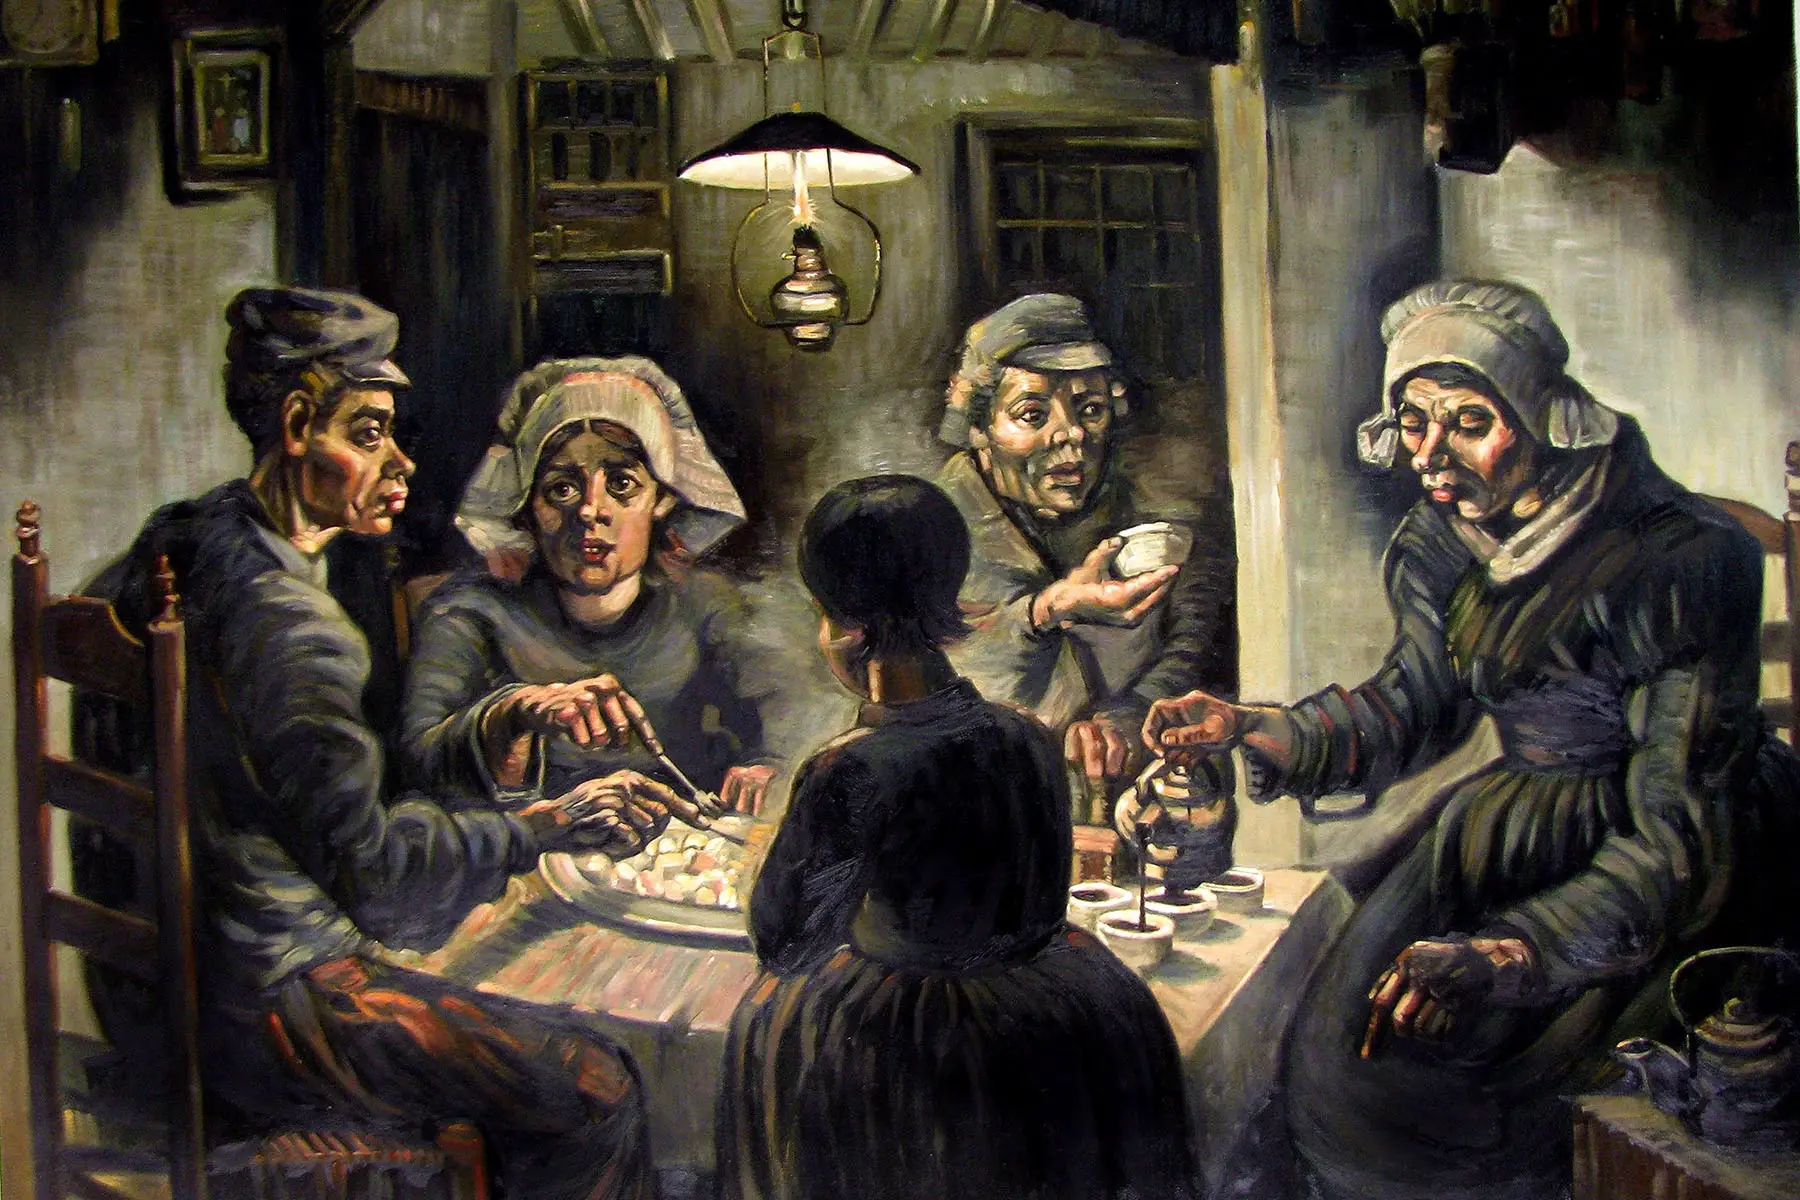 Vincent van Gogh's The Potato Eaters